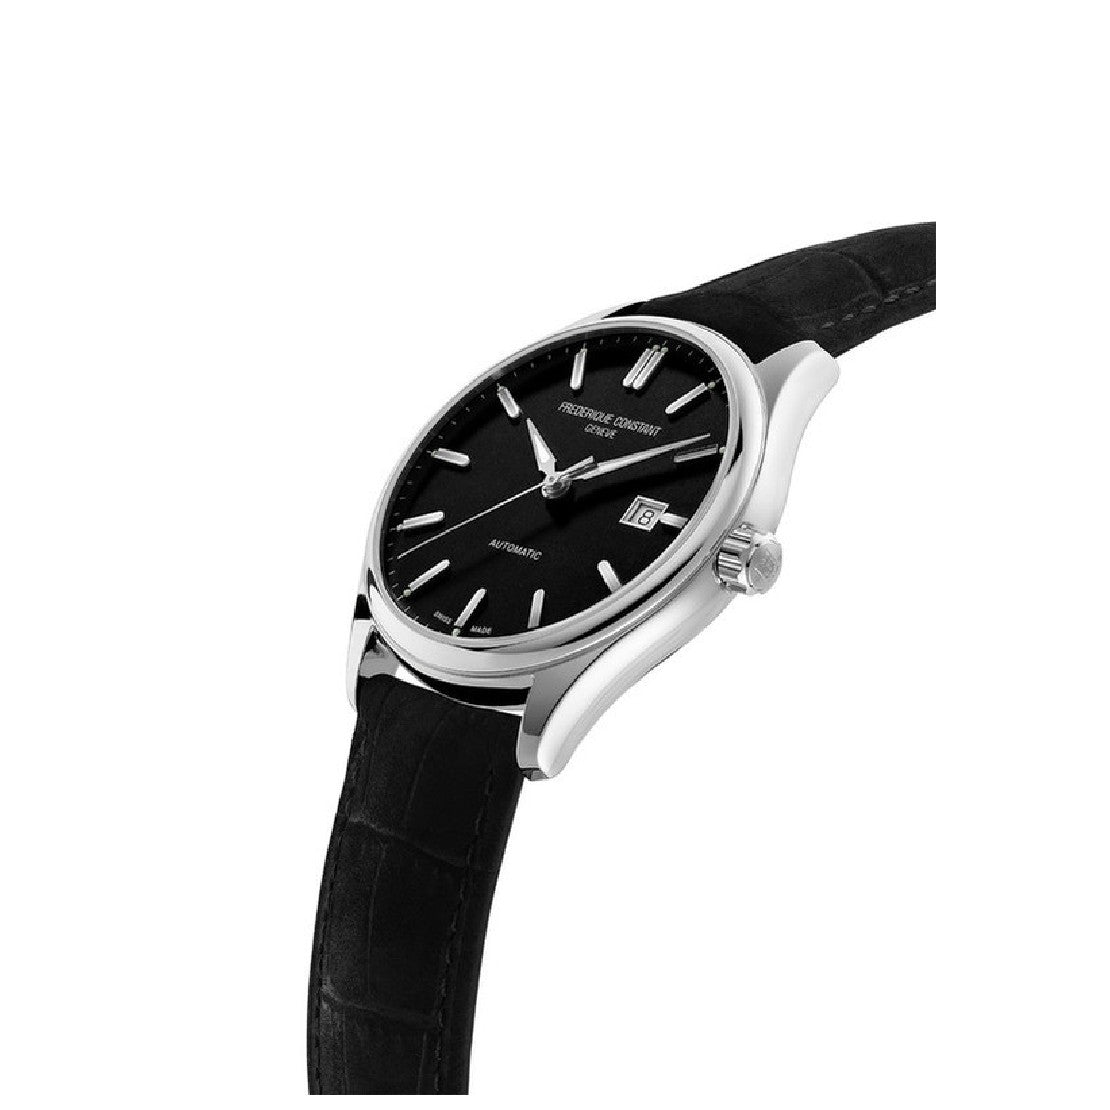 Frederique Constant Men's Automatic Movement Black Dial Watch - FC-0209